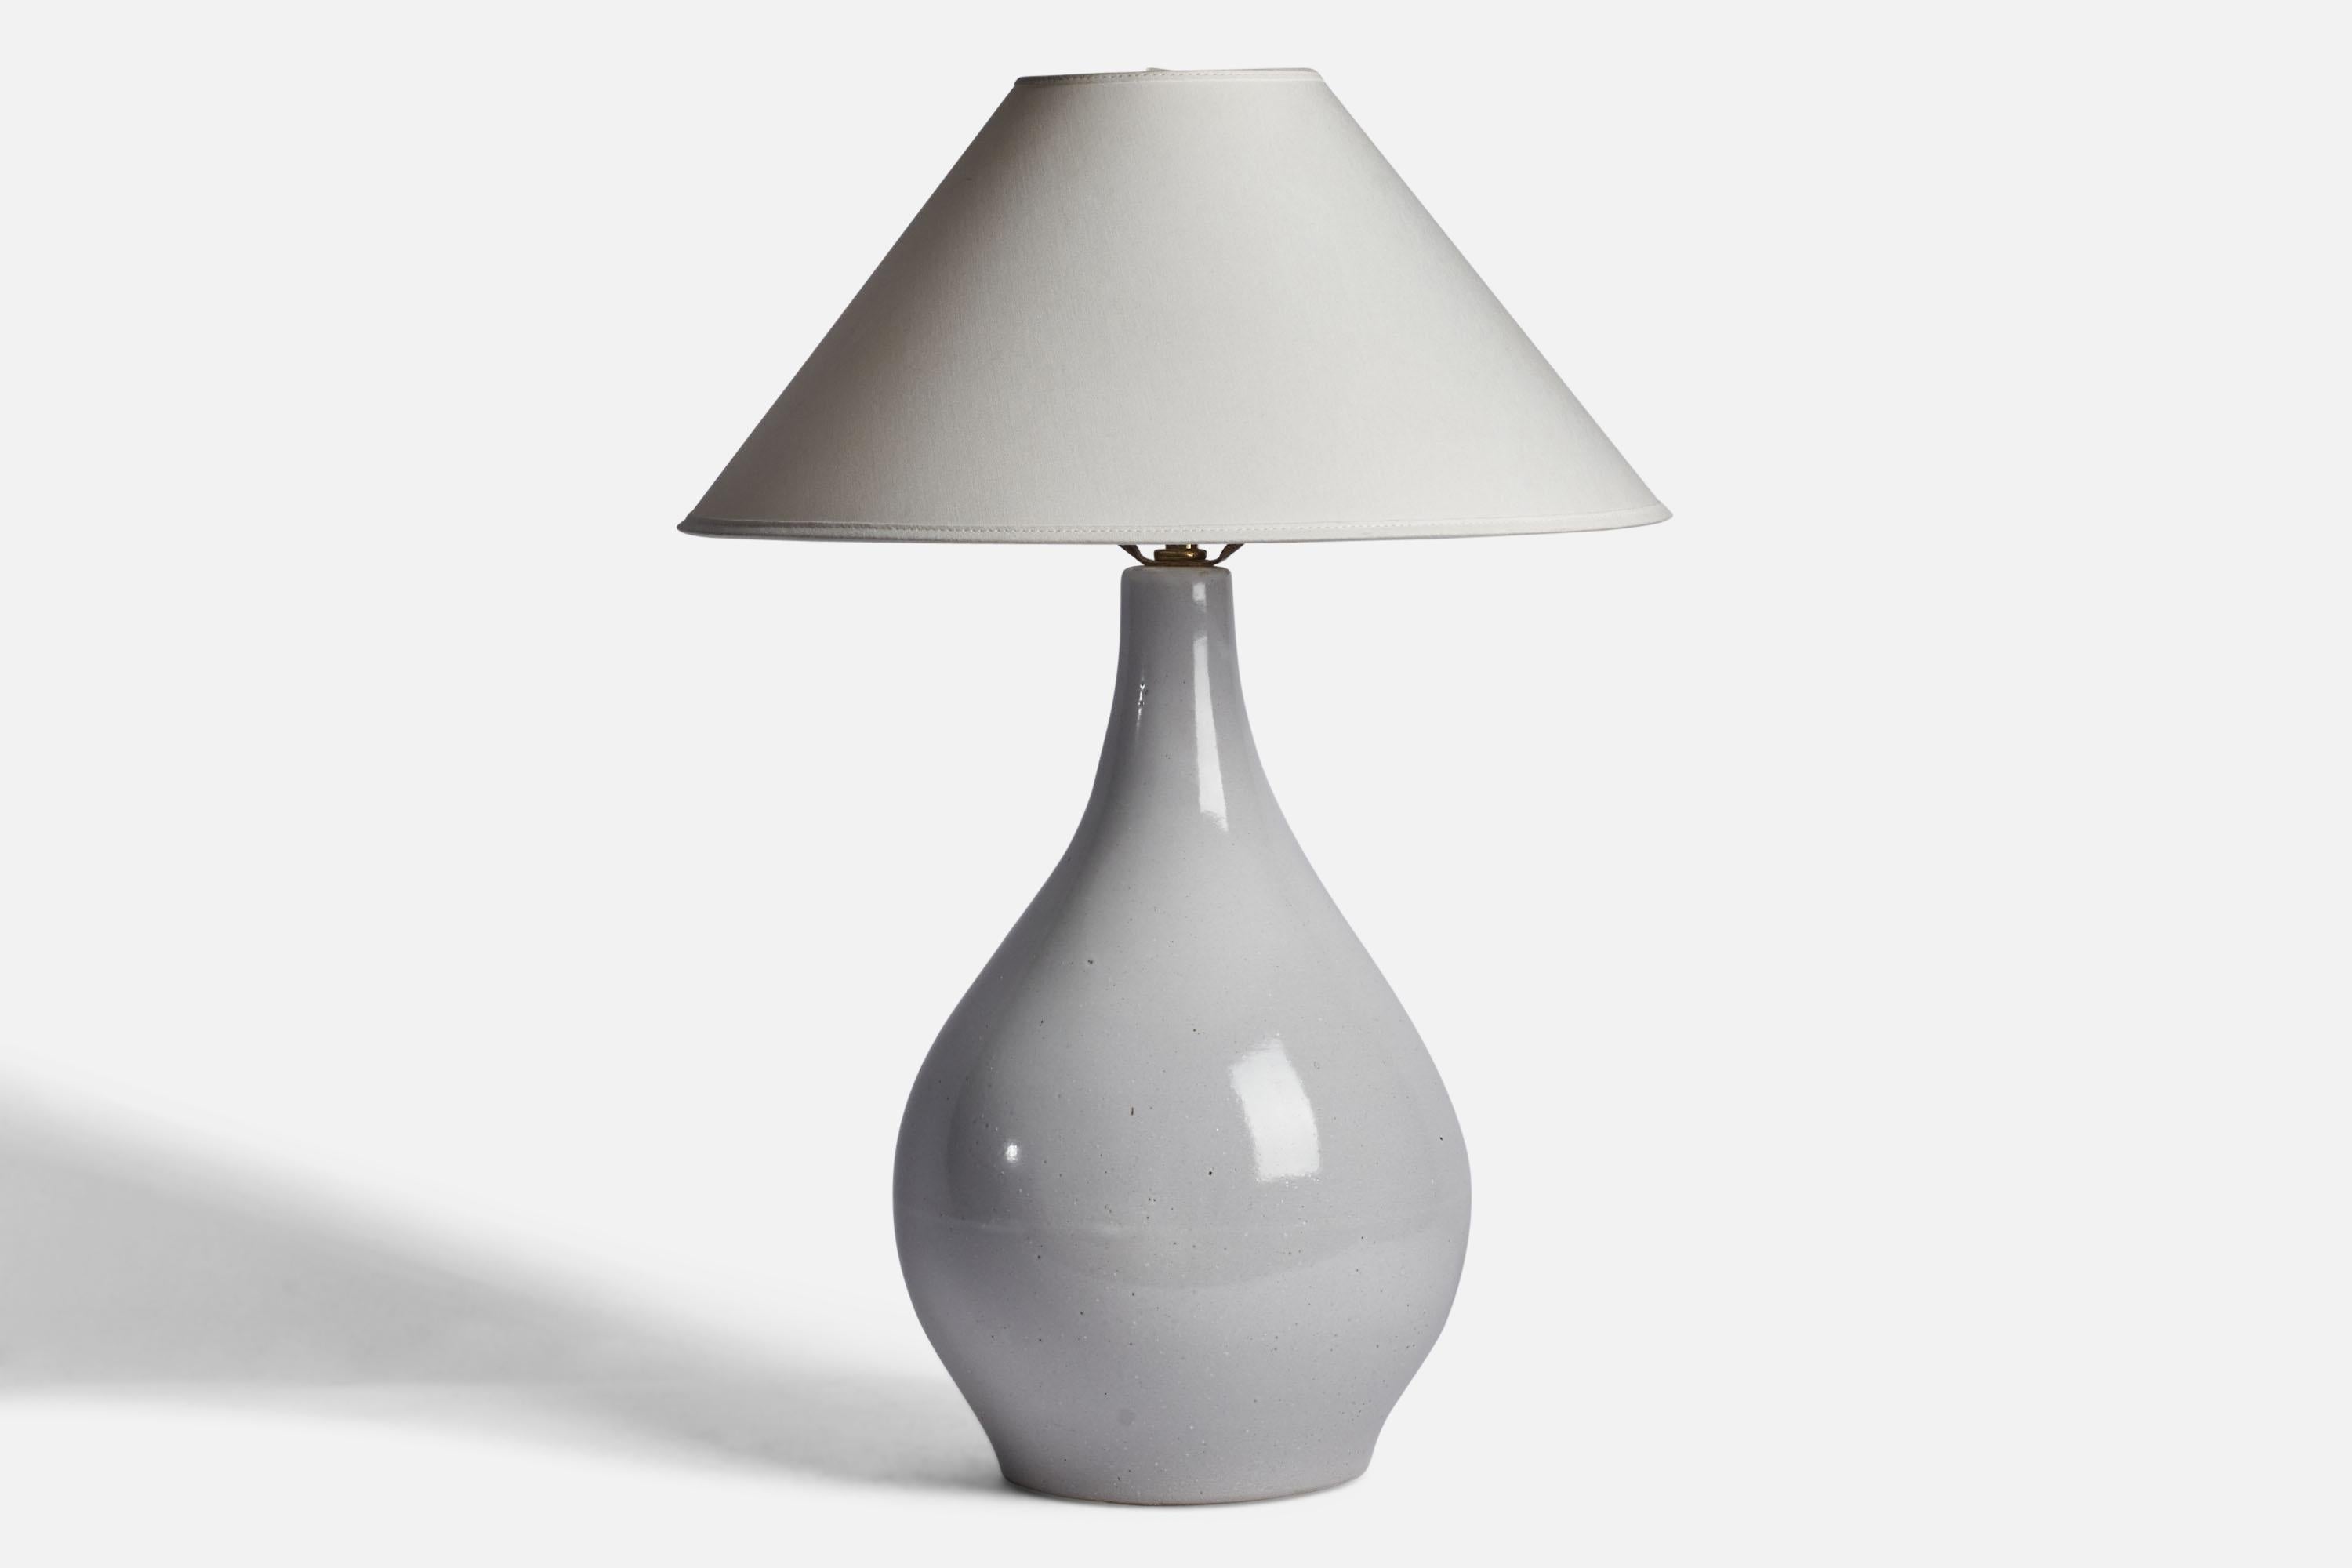 Lampe de table en céramique gris clair et émaillée brune, conçue par Jane & Gordon Martz et produite par Marshall Studios, États-Unis, années 1960.

Dimensions de la lampe (pouces) : 17.75